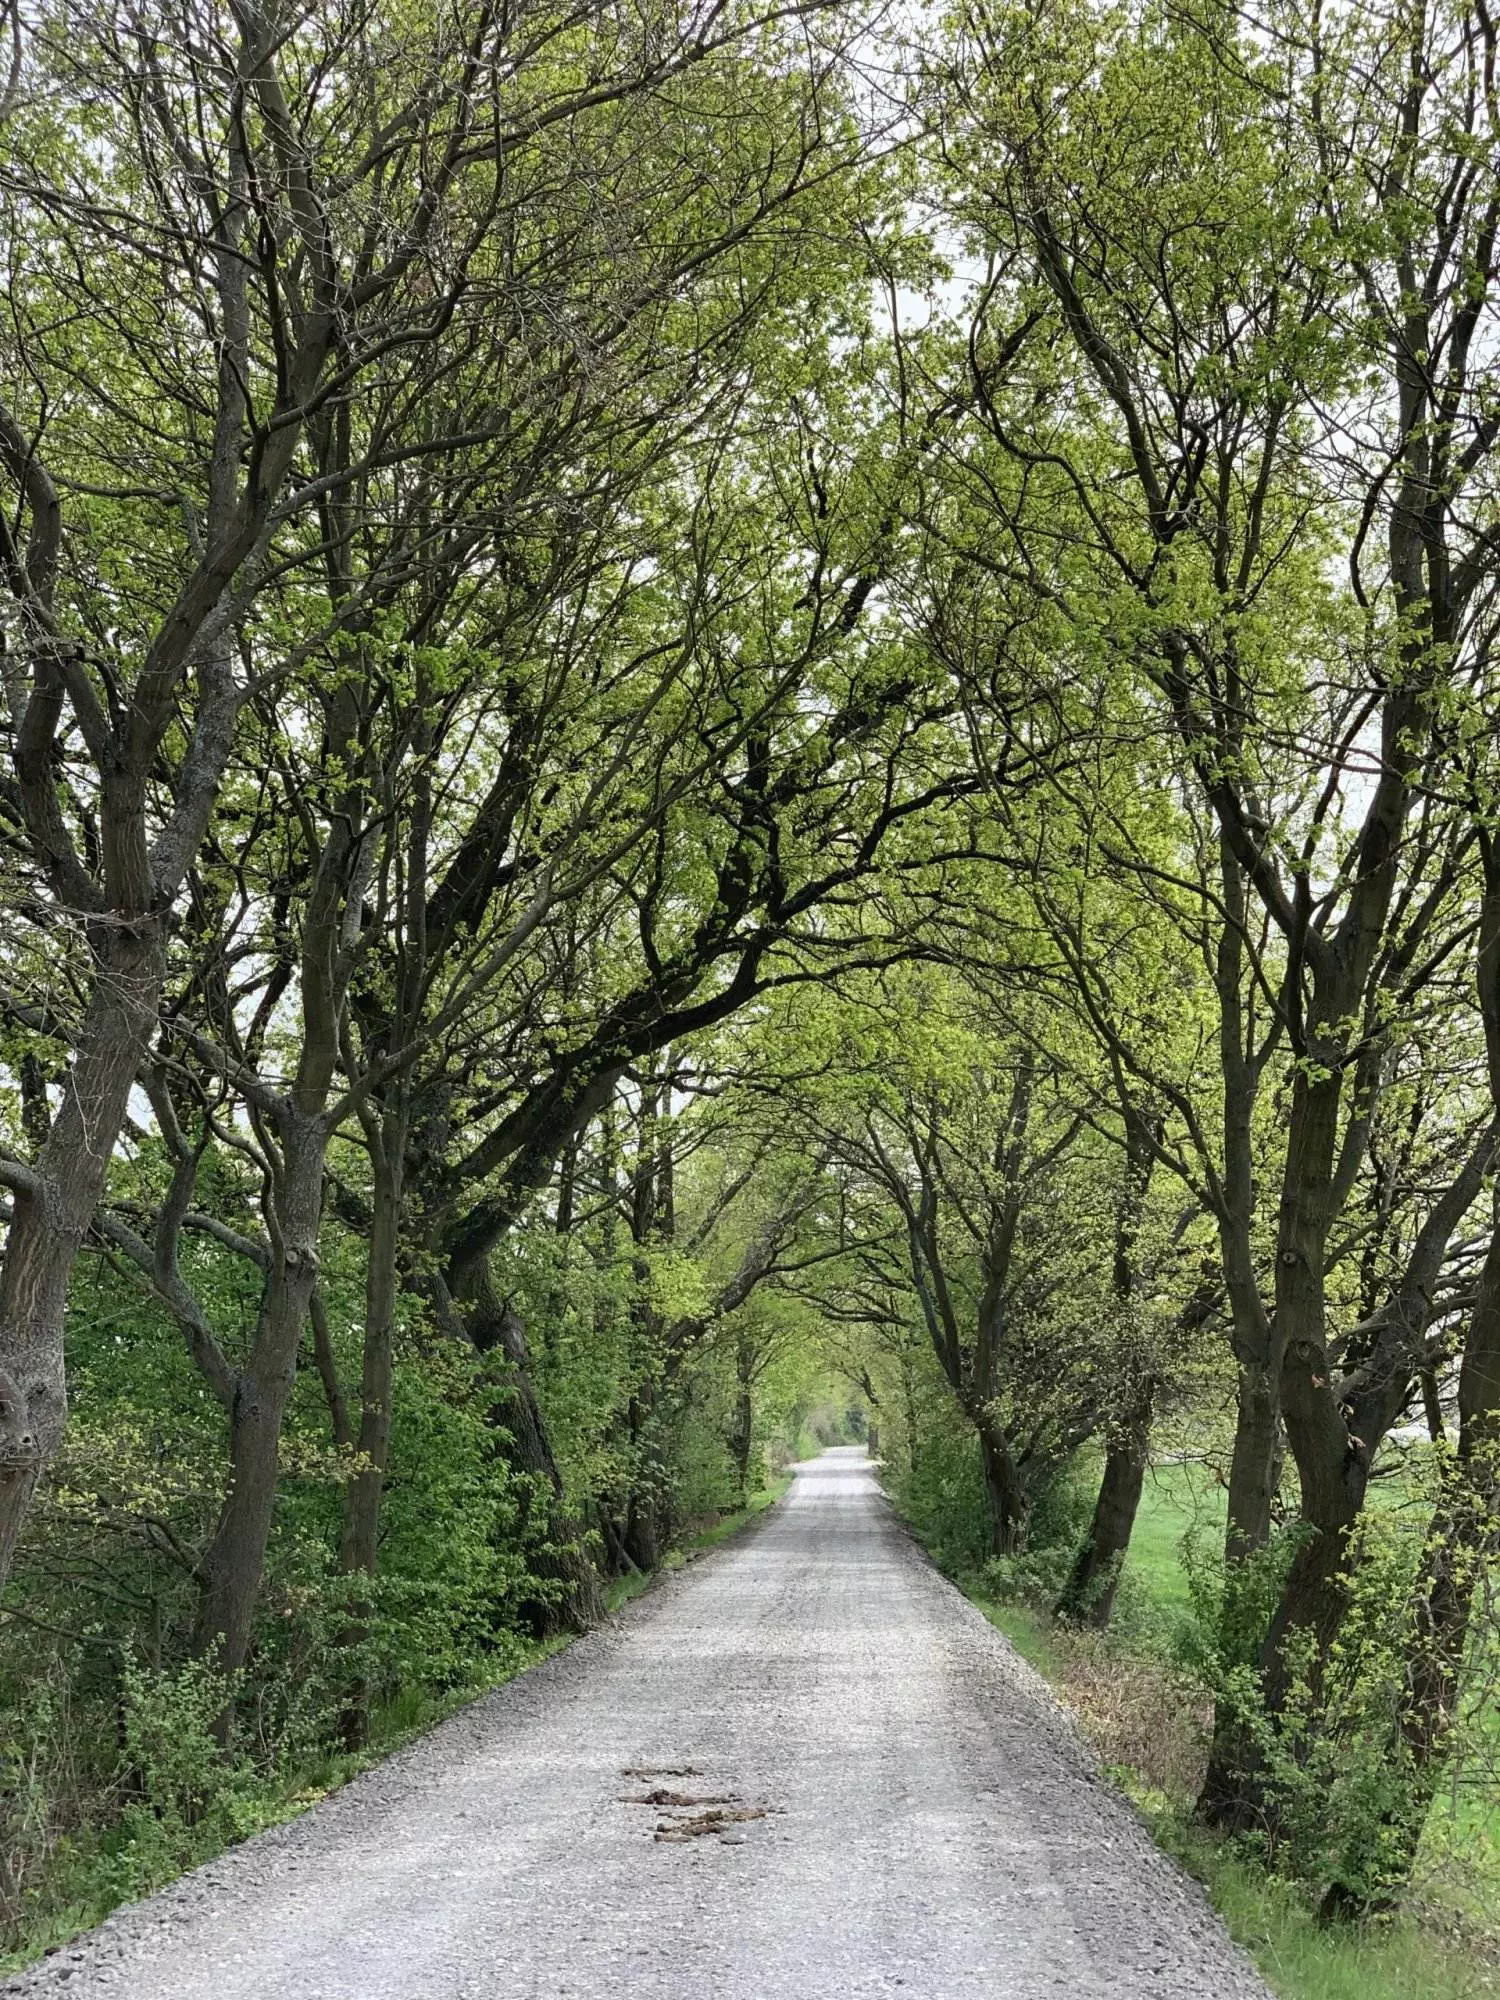 Eine unbefestigte Straße, gesäumt von grünen Bäumen.